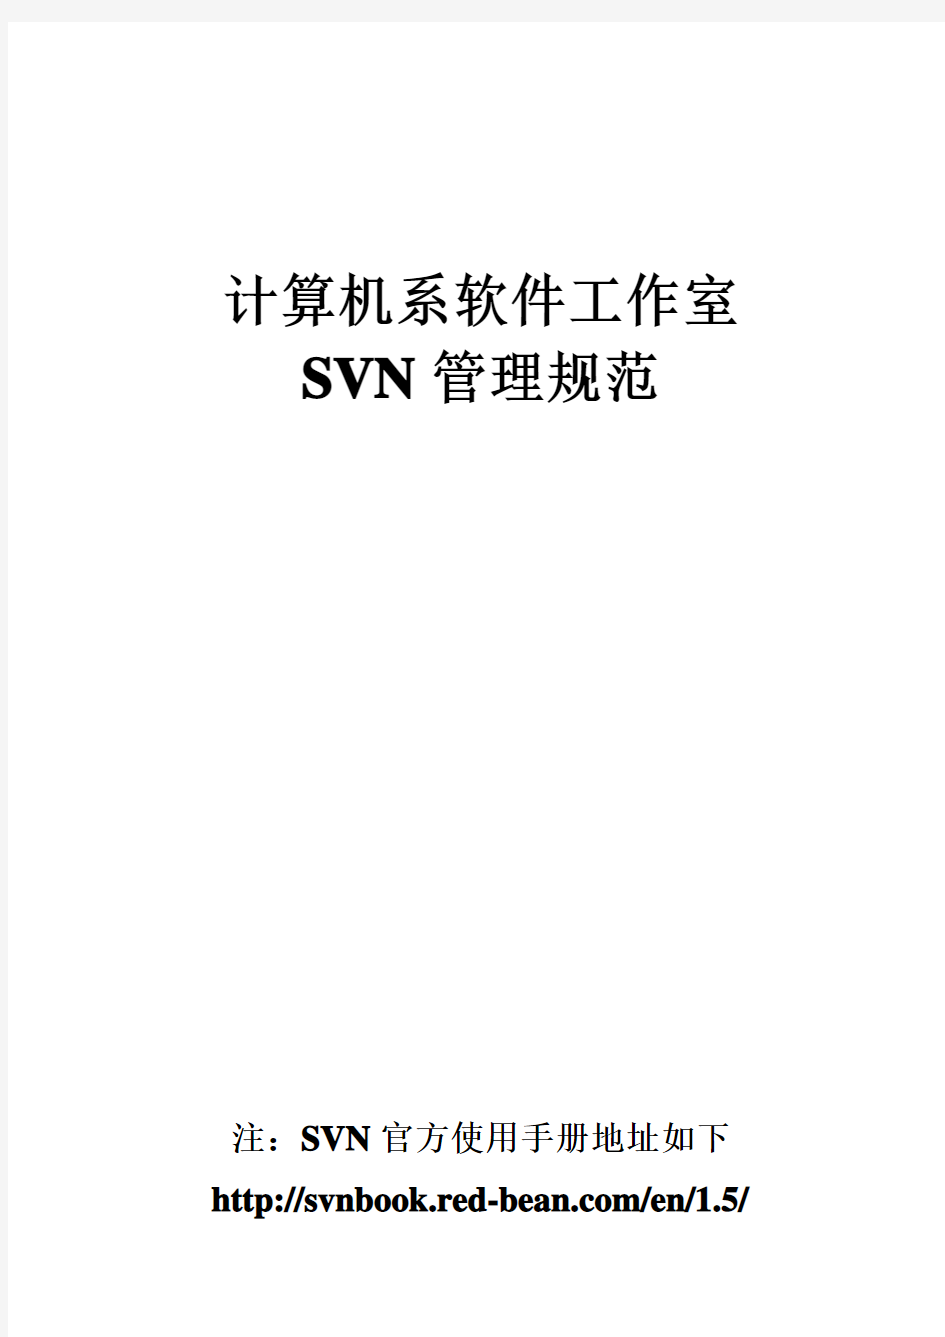 计算机系软件工作室_SVN管理规范